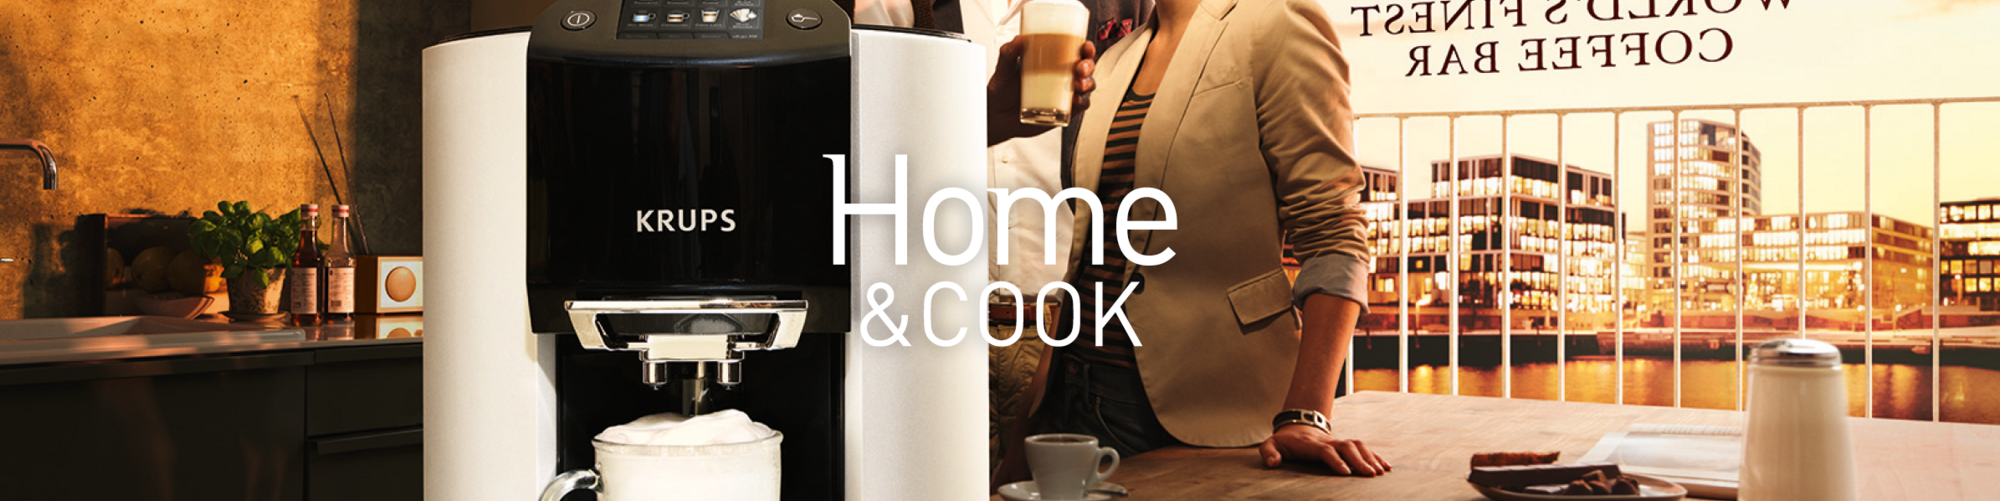 Home & Cook Messancy - Groupe Seb - ‼️‼️ NOUVEAUTÉS